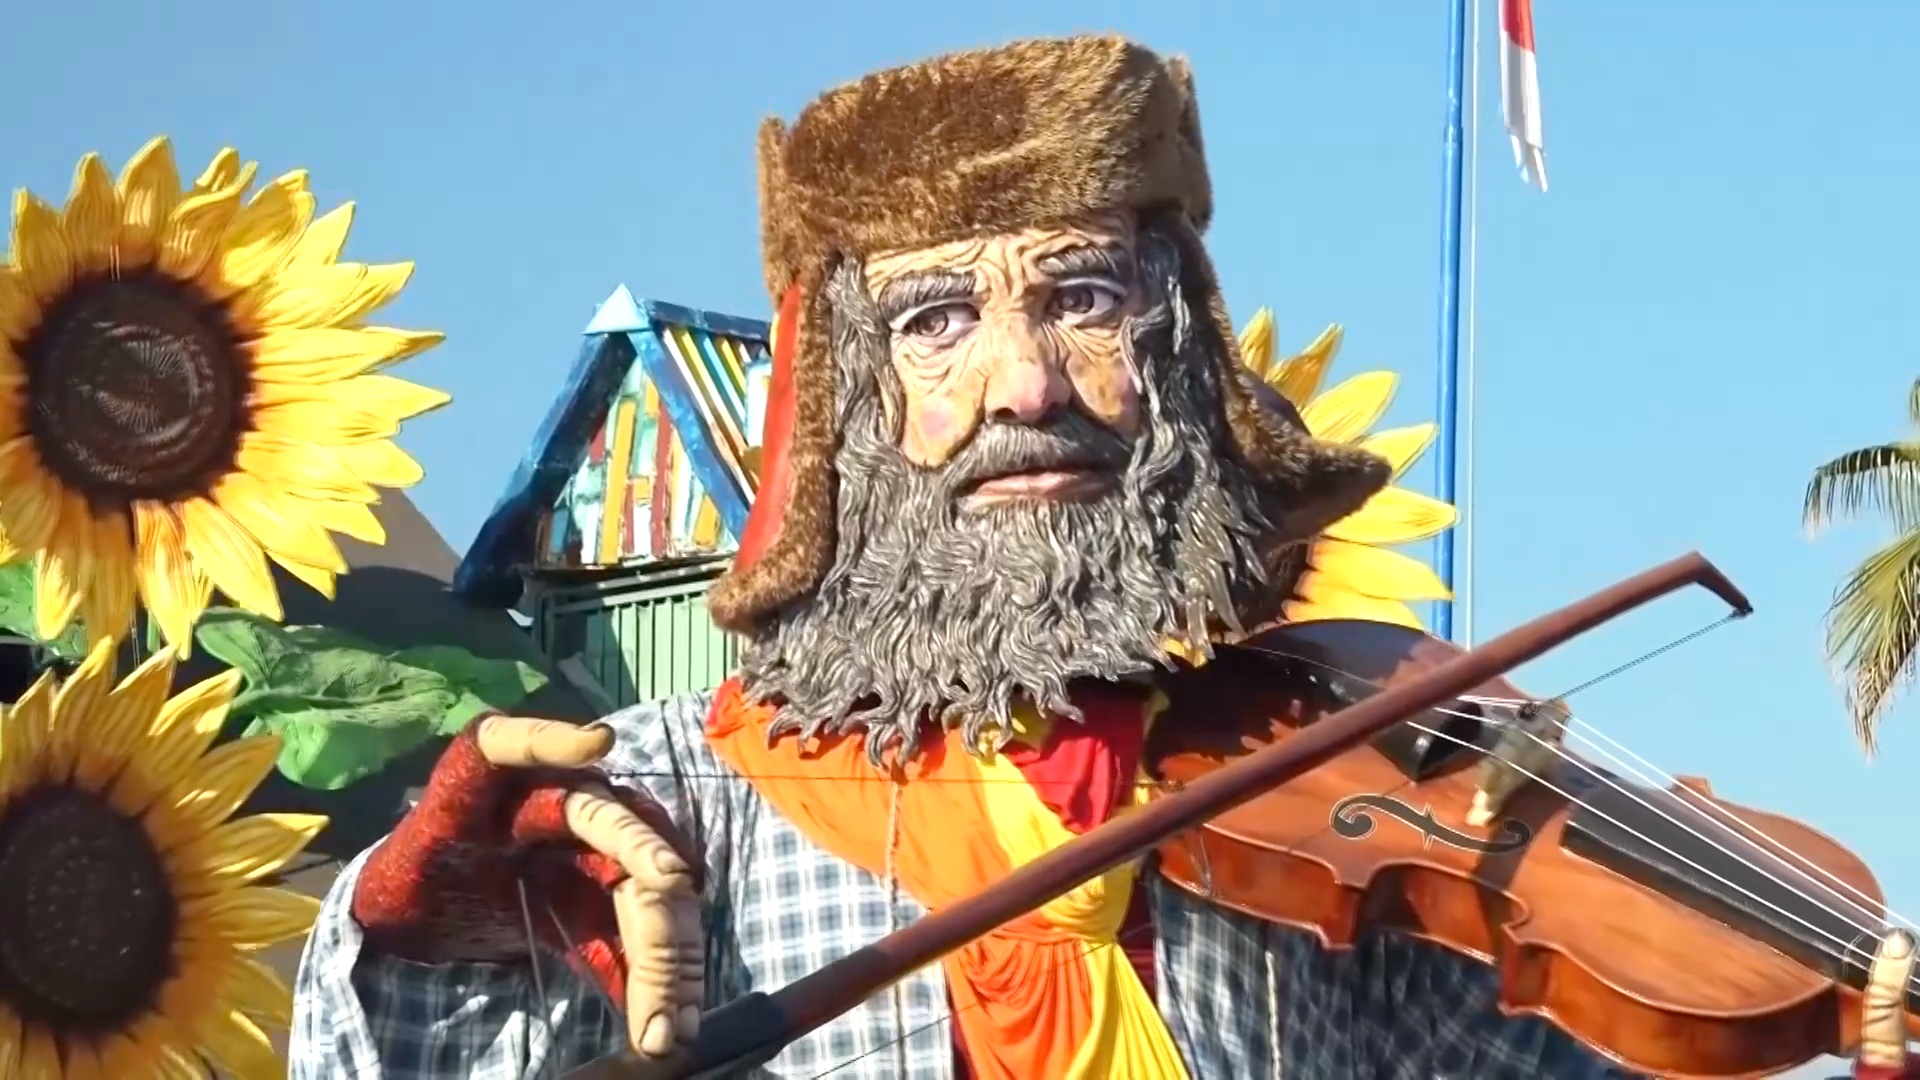 Гигантские куклы и сатира: карнавал в Виареджо отмечает 150-летие